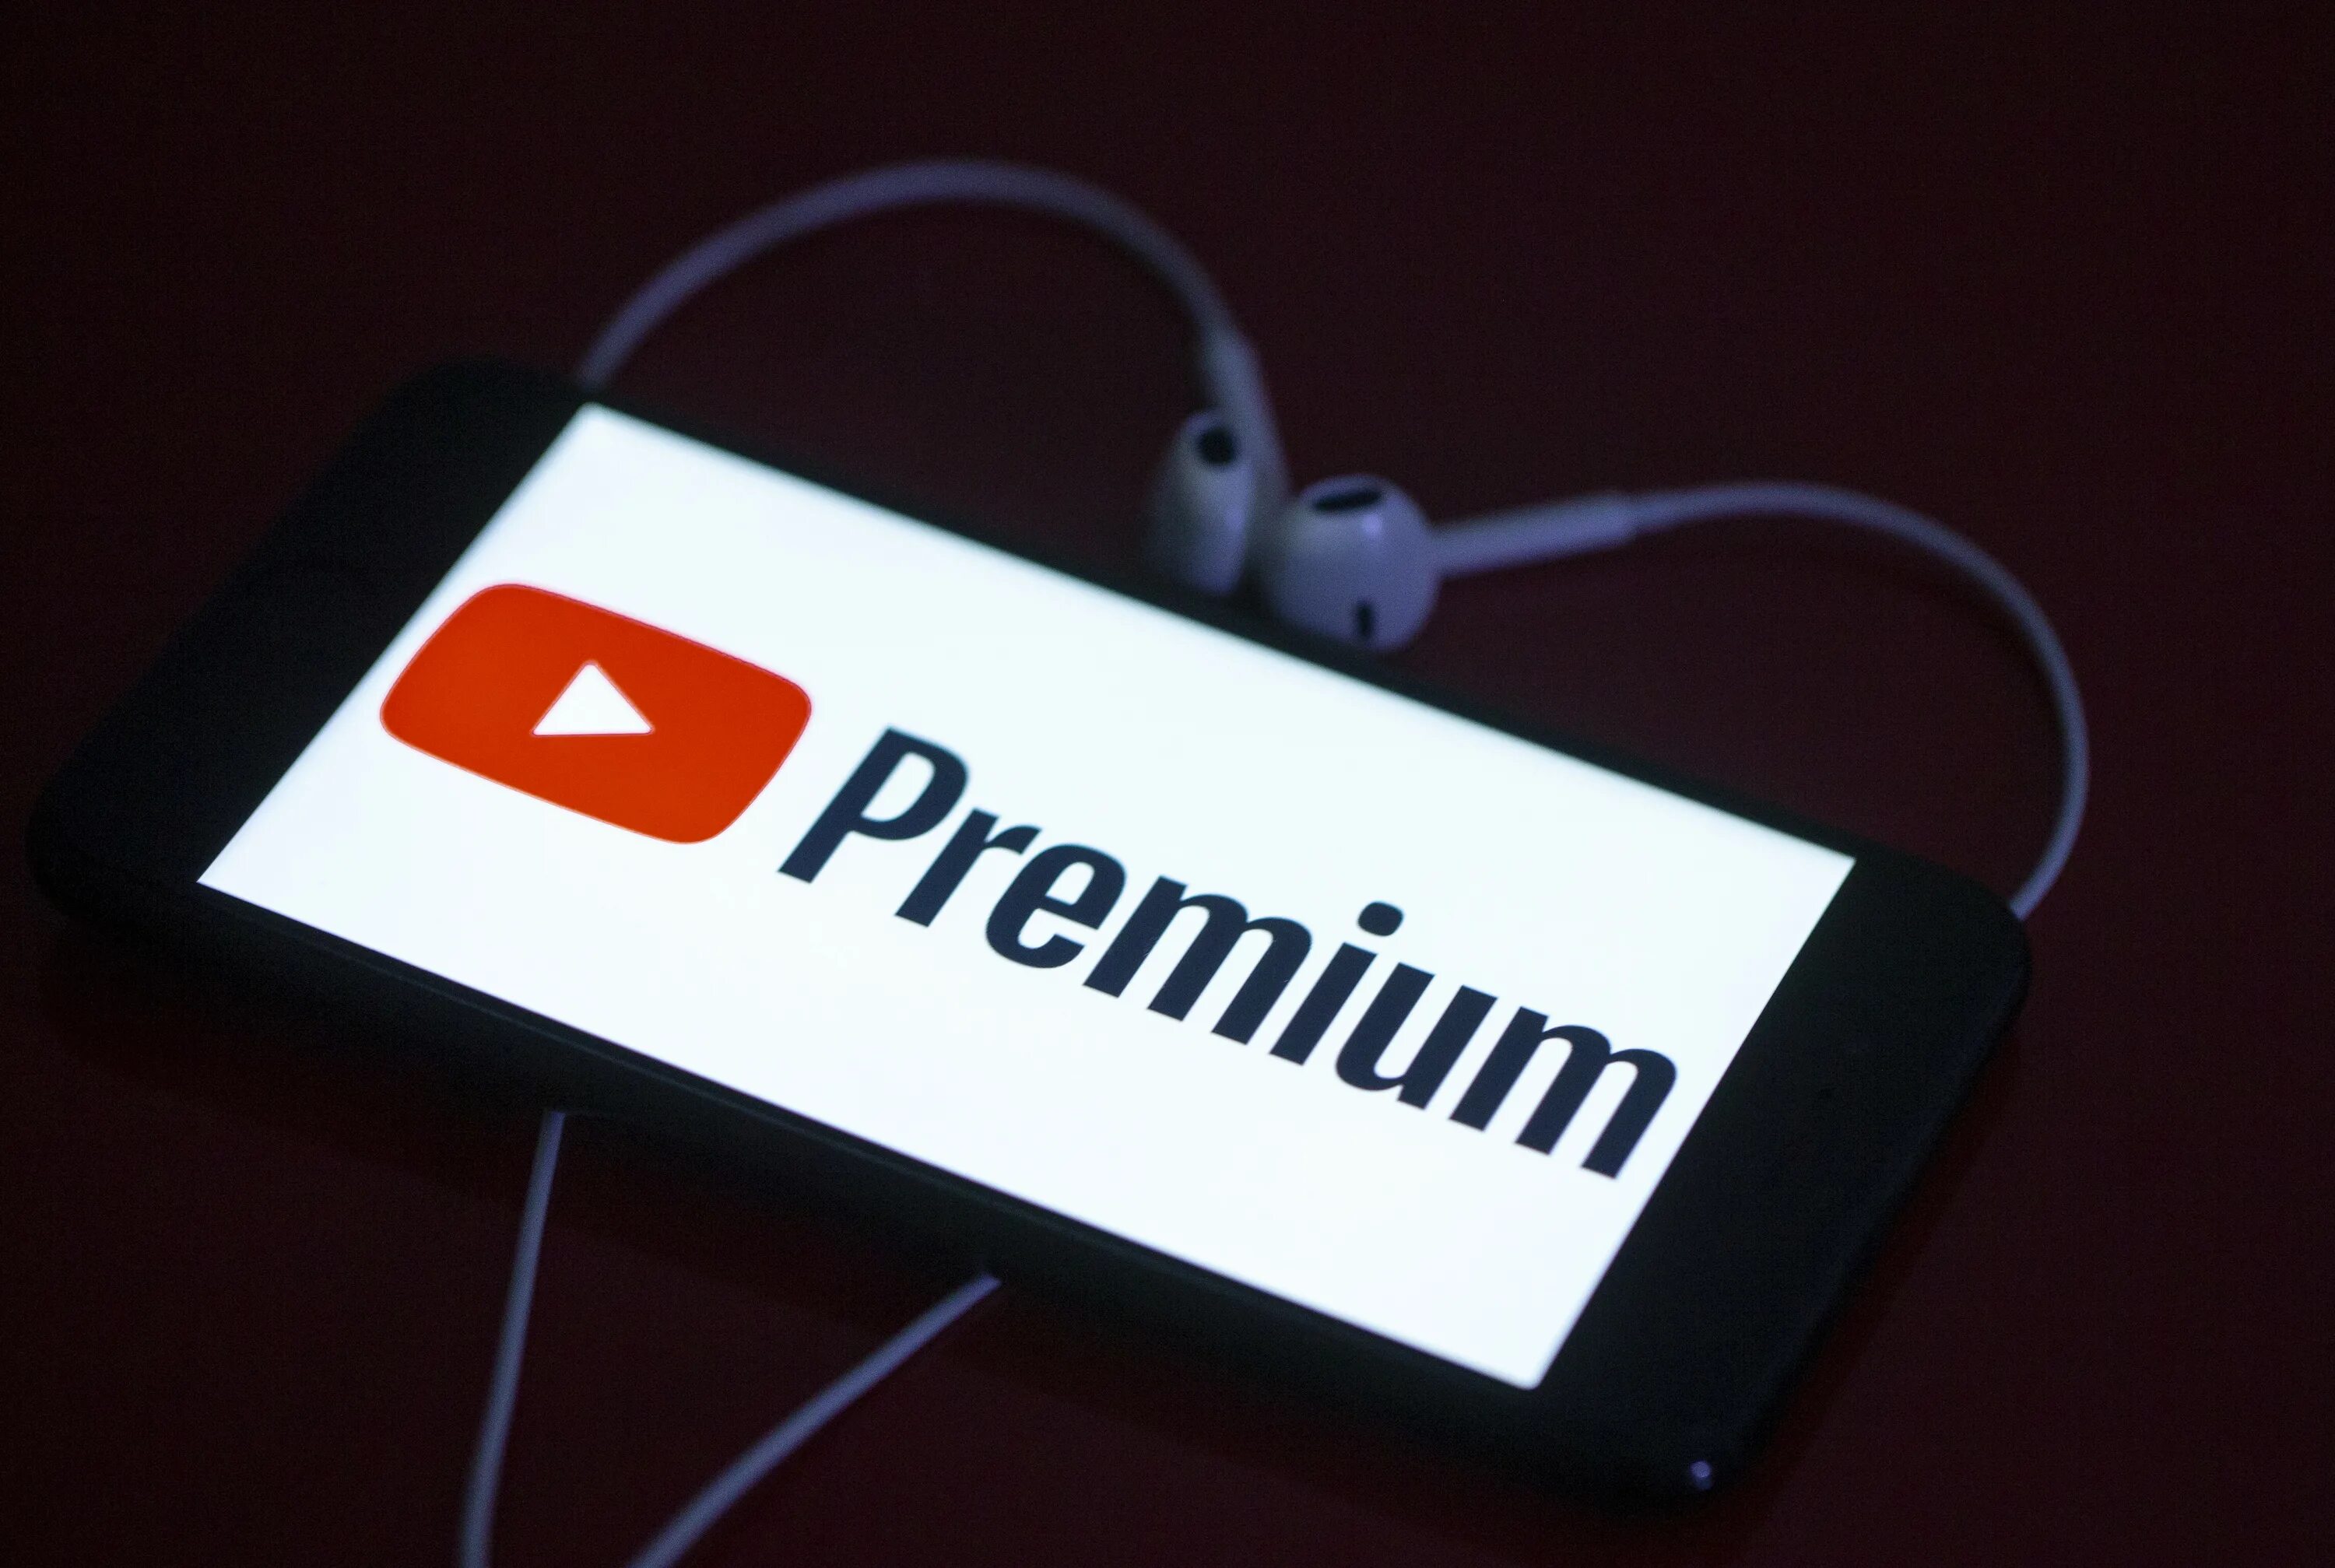 Youtube Premium. Ютуб премиум. Ютуб премиум картинка. Подписка youtube Premium.